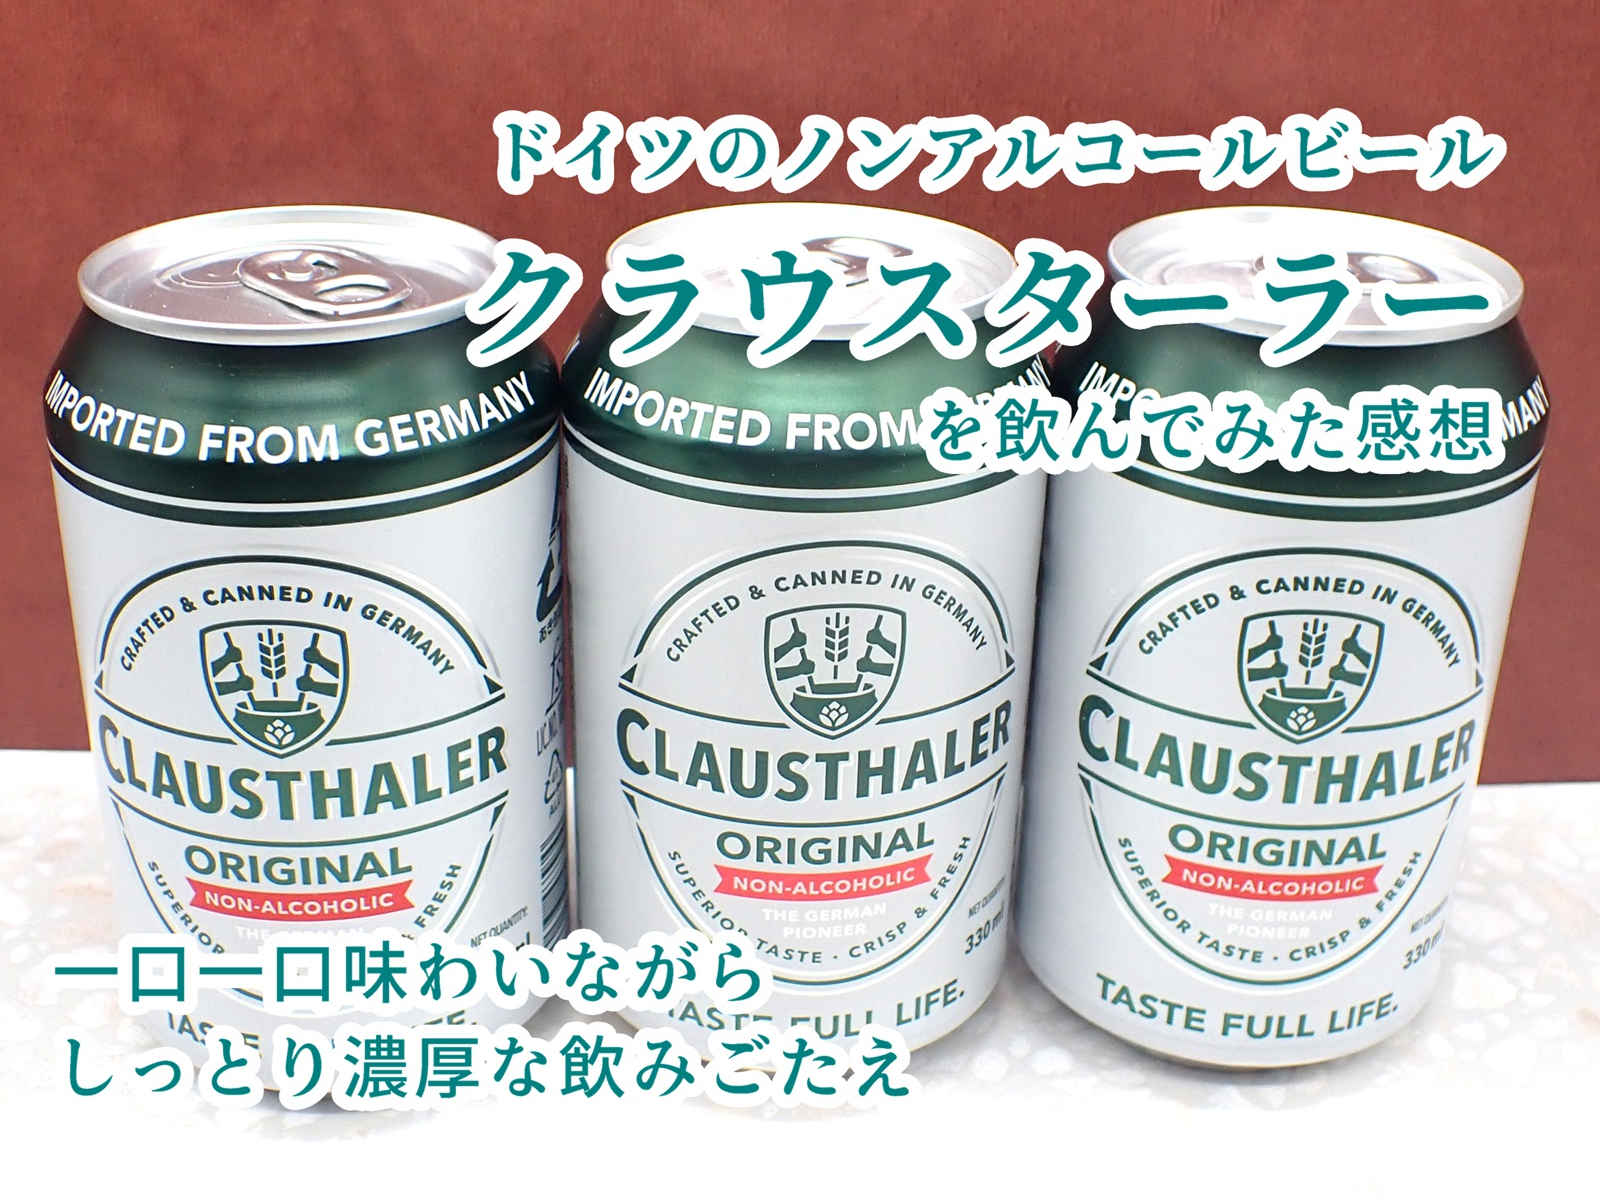 クラウスターラーという名前のドイツ産のノンアルコールビールを飲んでみた感想をレビューしています。